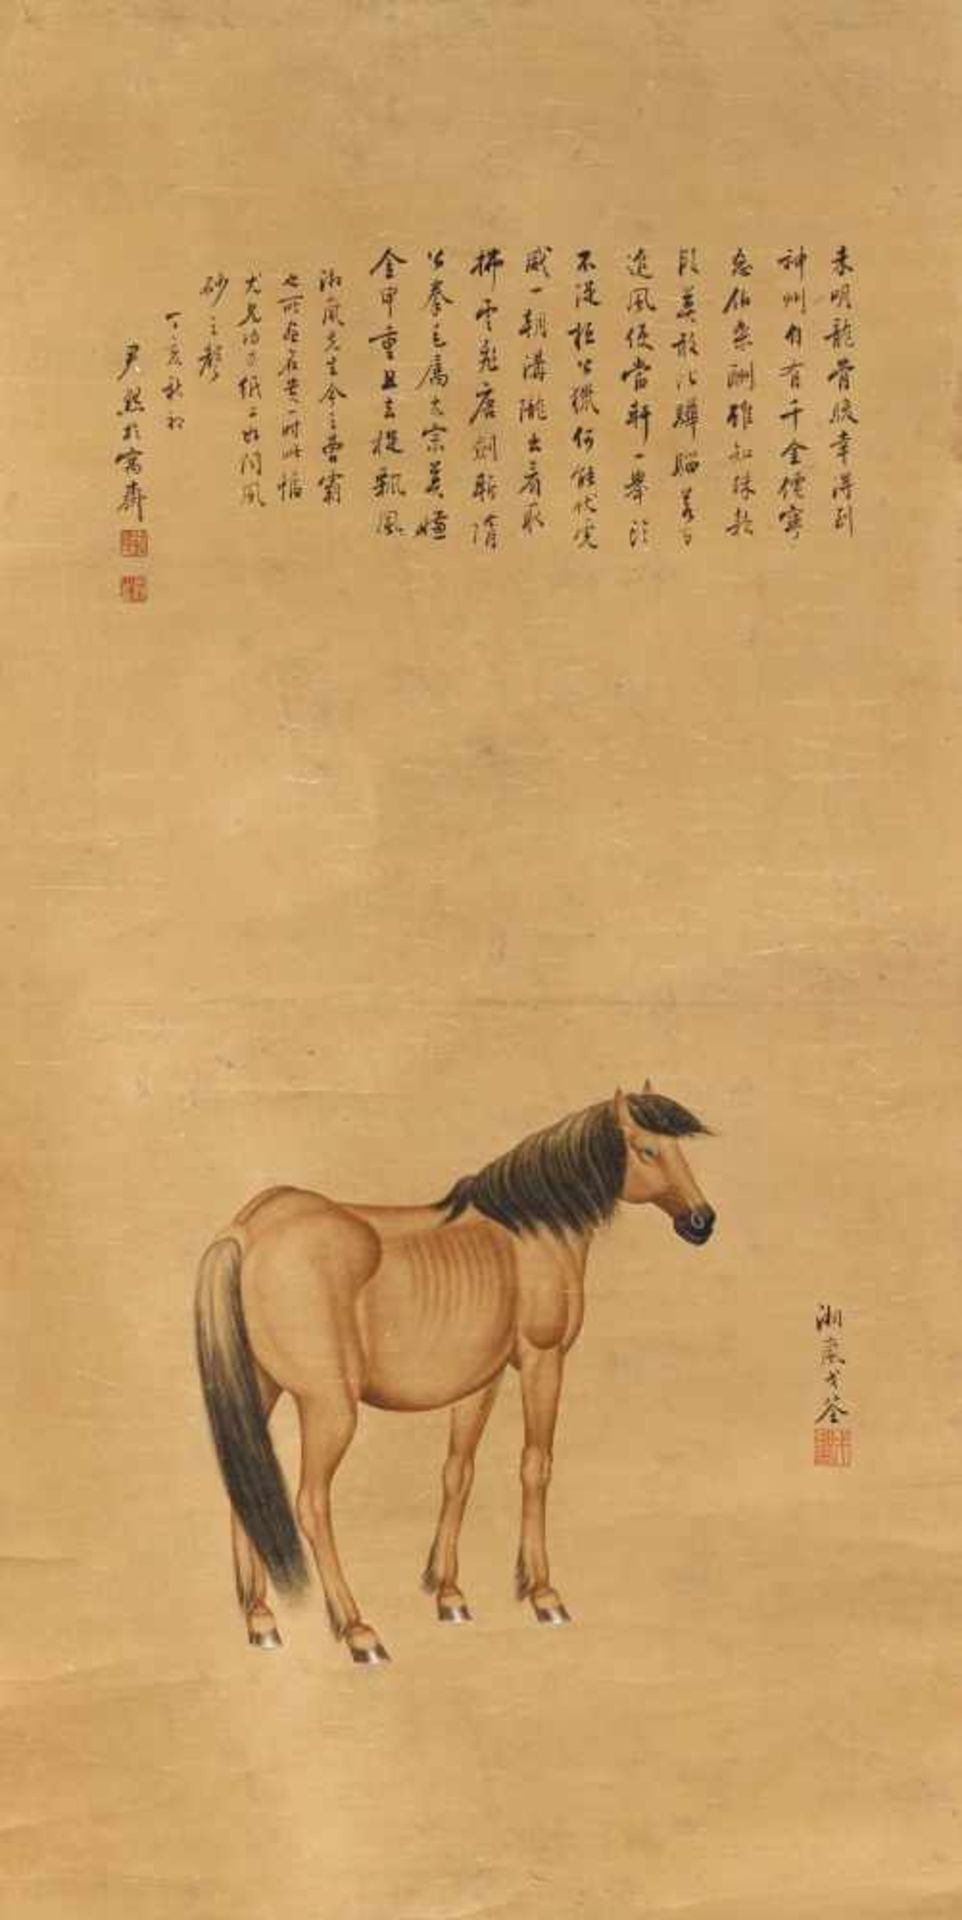 GE, XIANGLAN1904 Dongtai, Jiangsu - 1964 - zugeschrieben. Pferd. China. Laut Aufschrift datiert